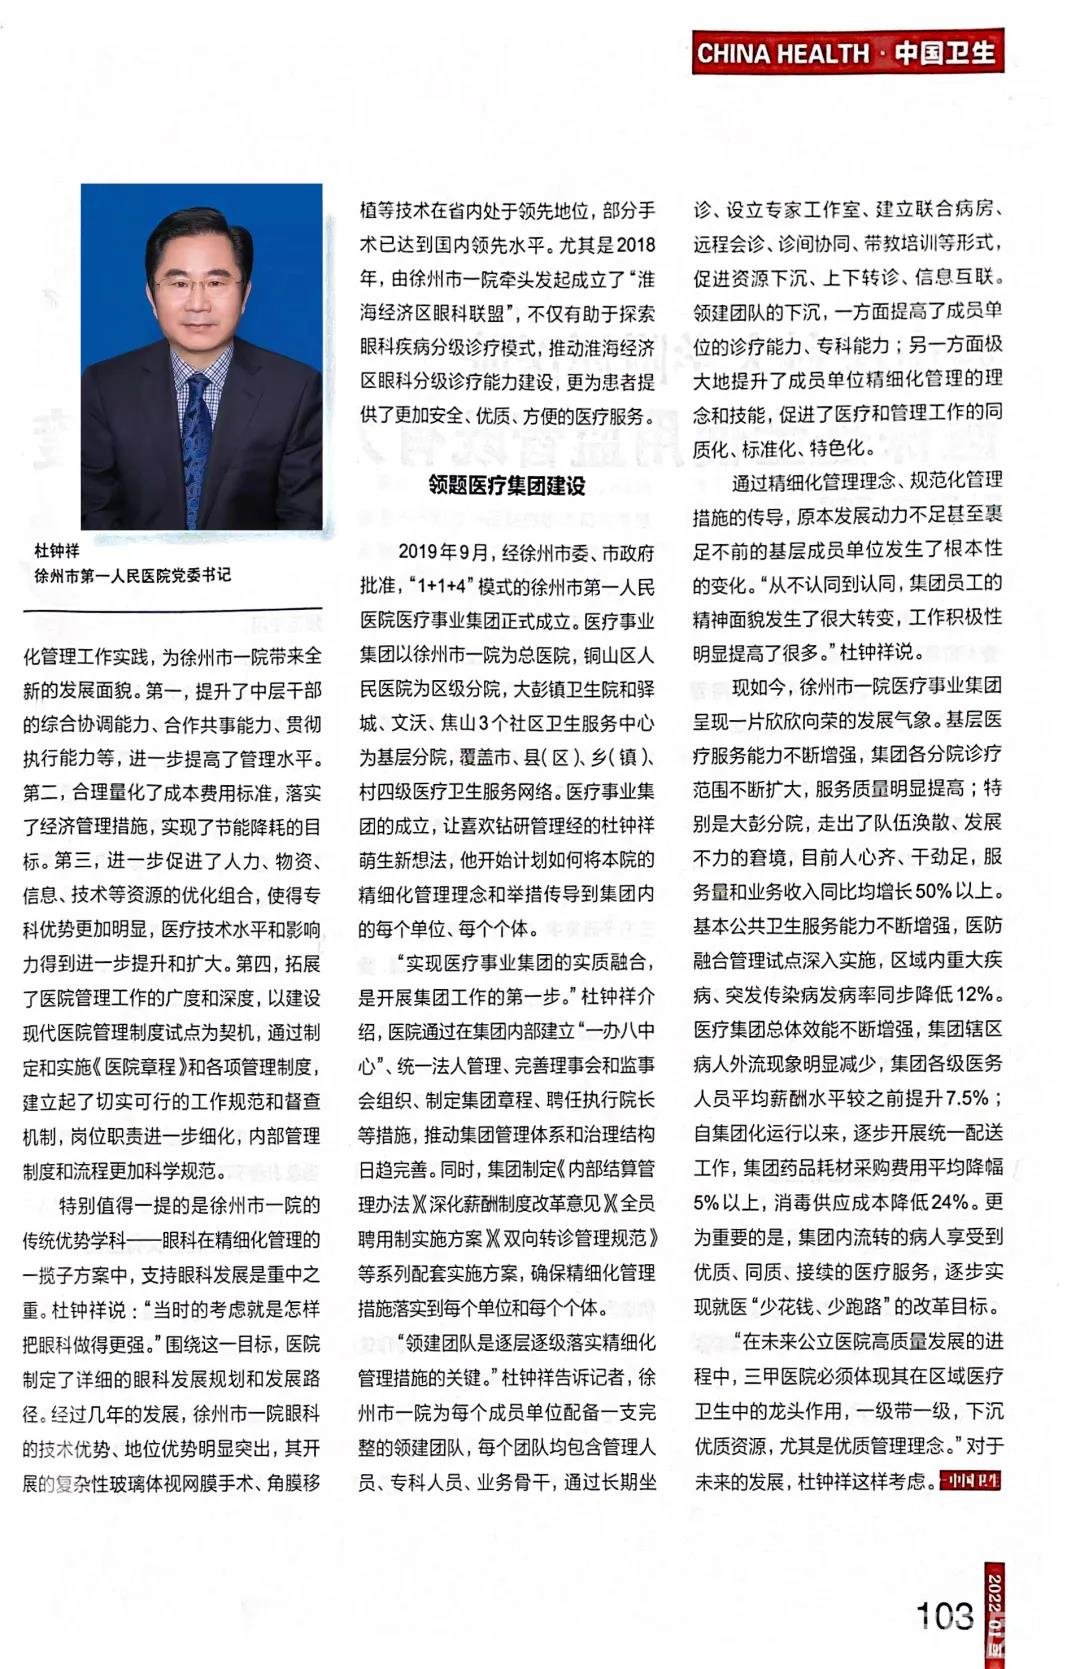 地市级医院的精细化管理之路探索 ——《中国卫生》杂志专访市一院党委书记杜钟祥